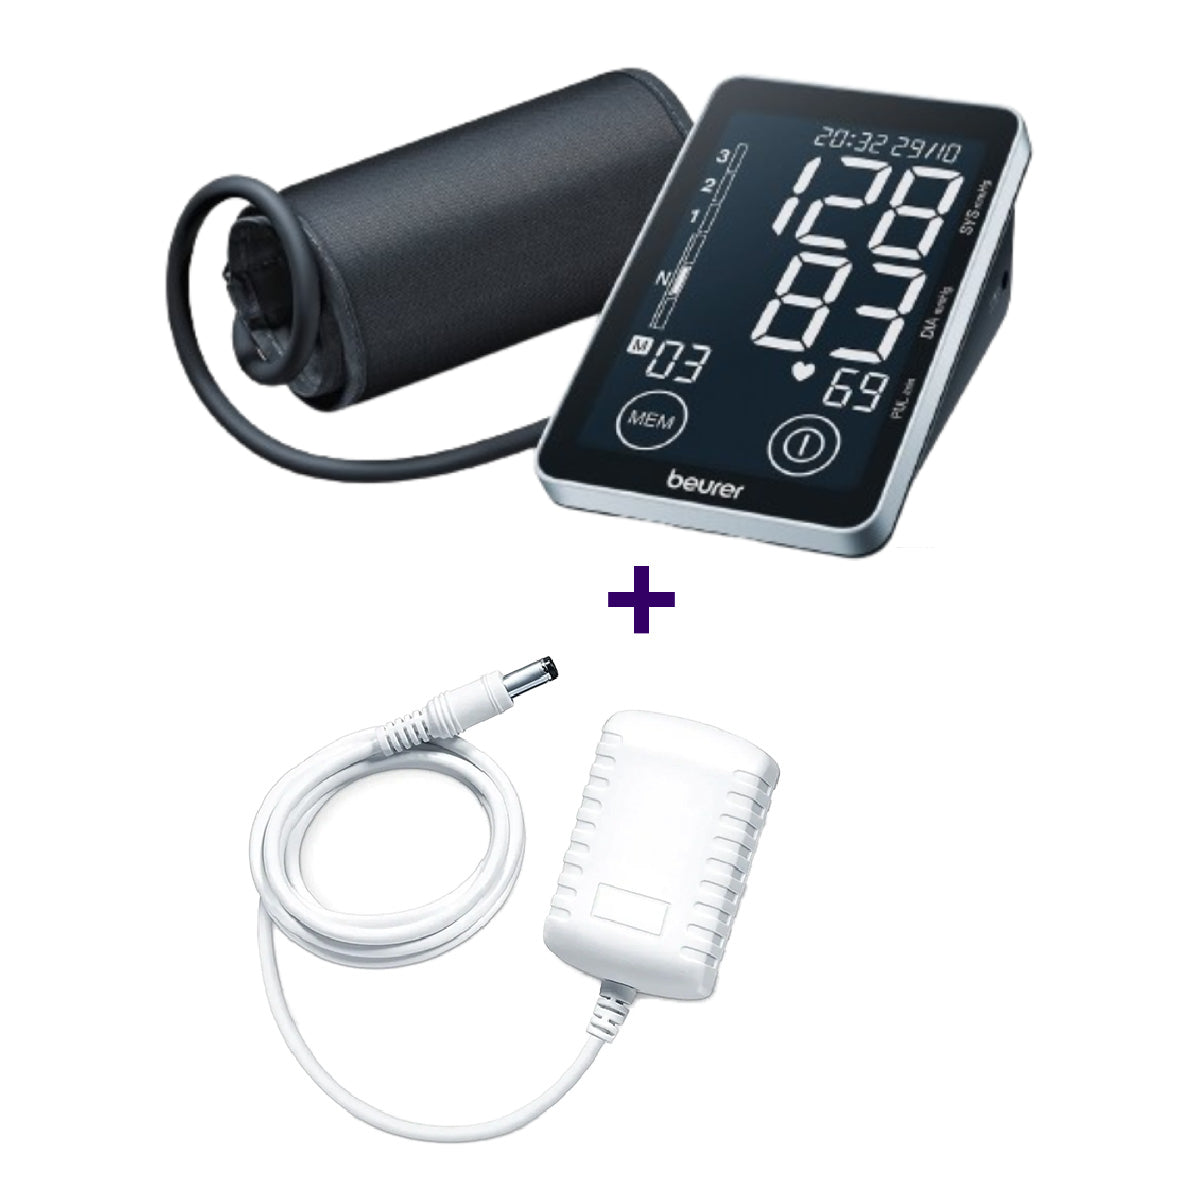 Monitor de presión arterial baumanómetro digital de brazo BM58 + adaptador de corriente Marca Beurer